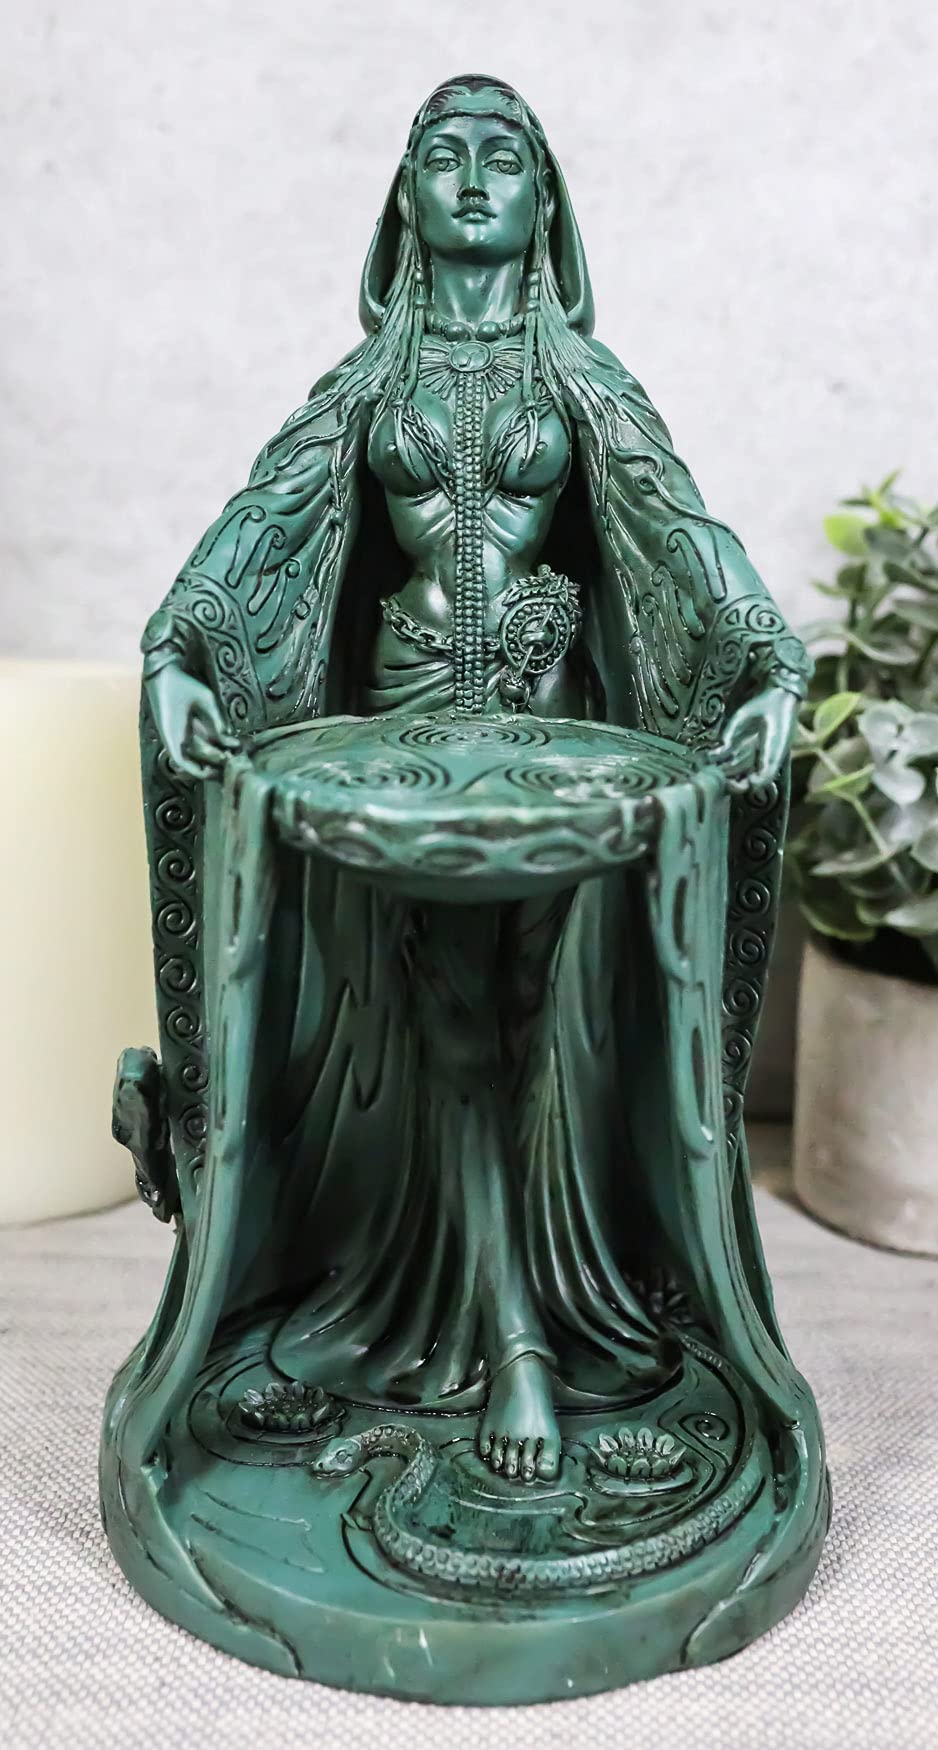 Danu: A Deusa Mãe na Mitologia Irlandesa